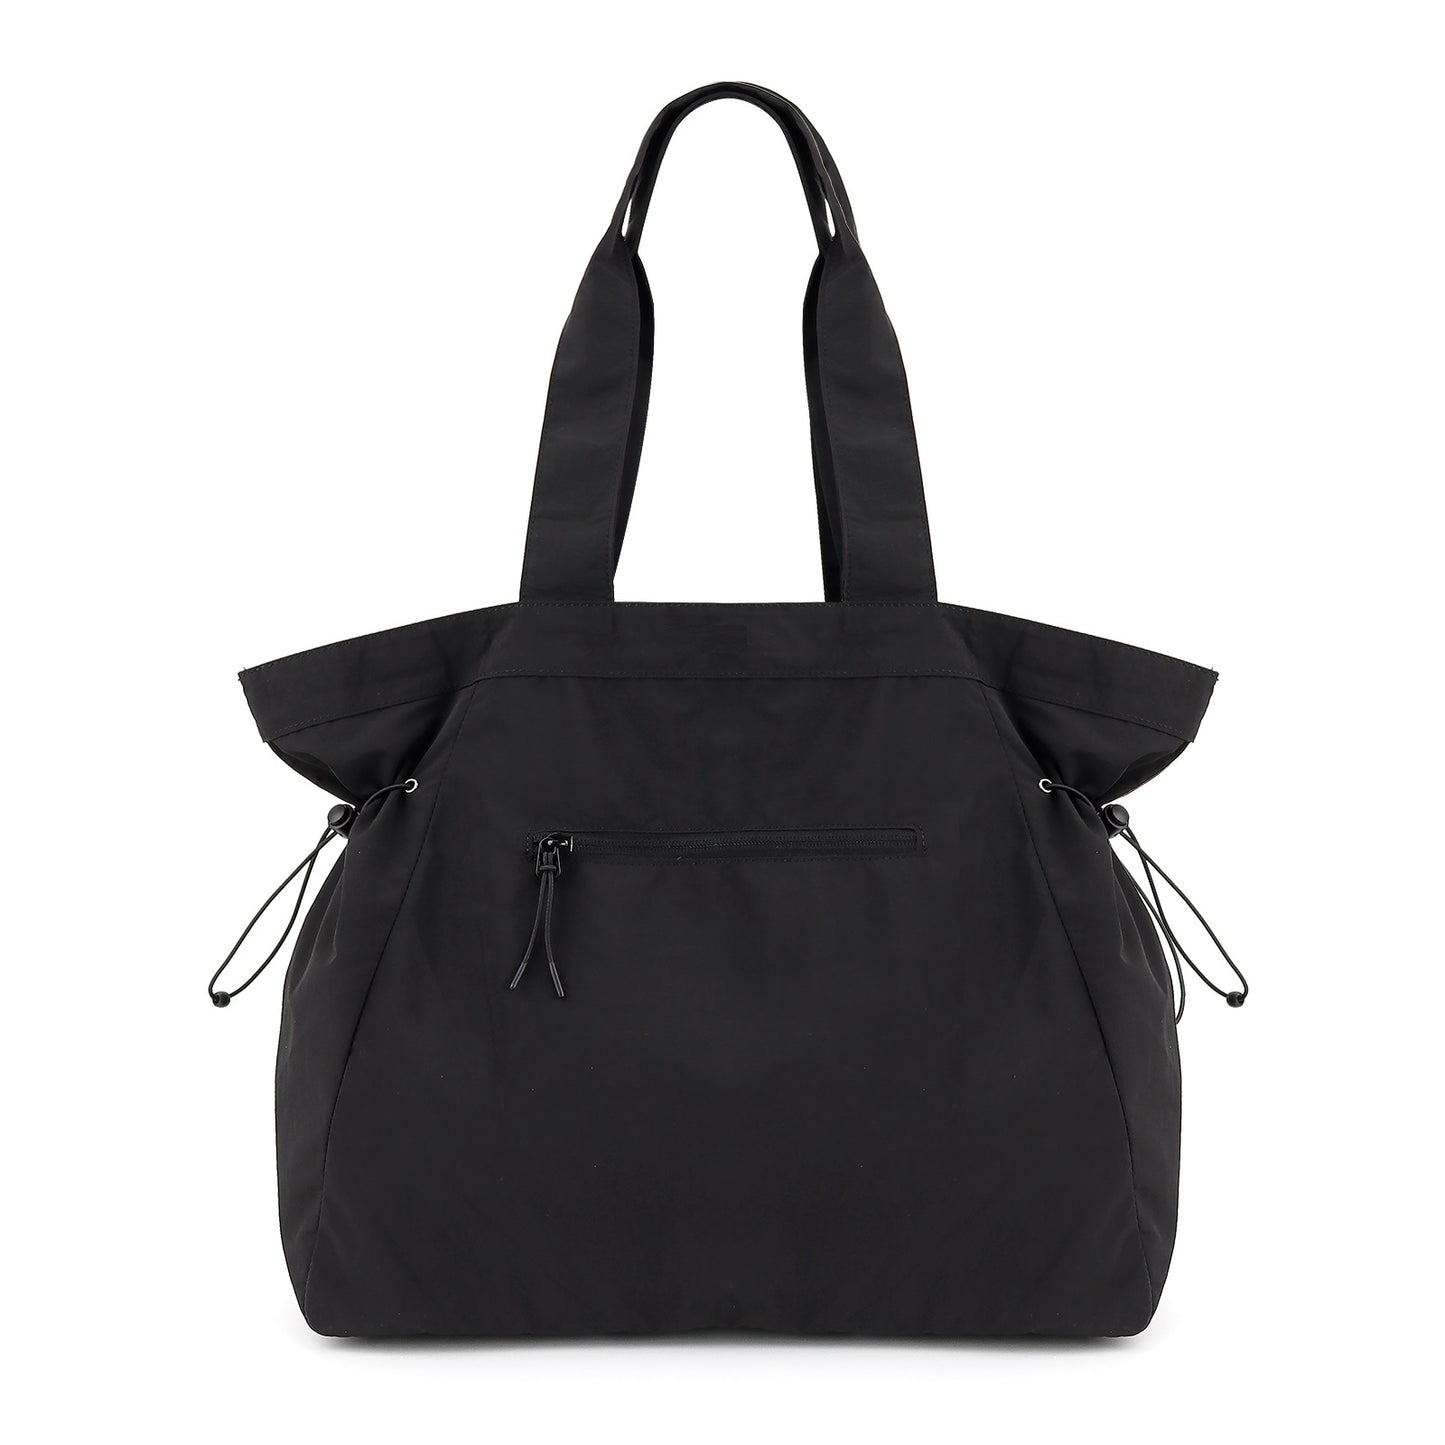 LIBBY Tote Bag in Black